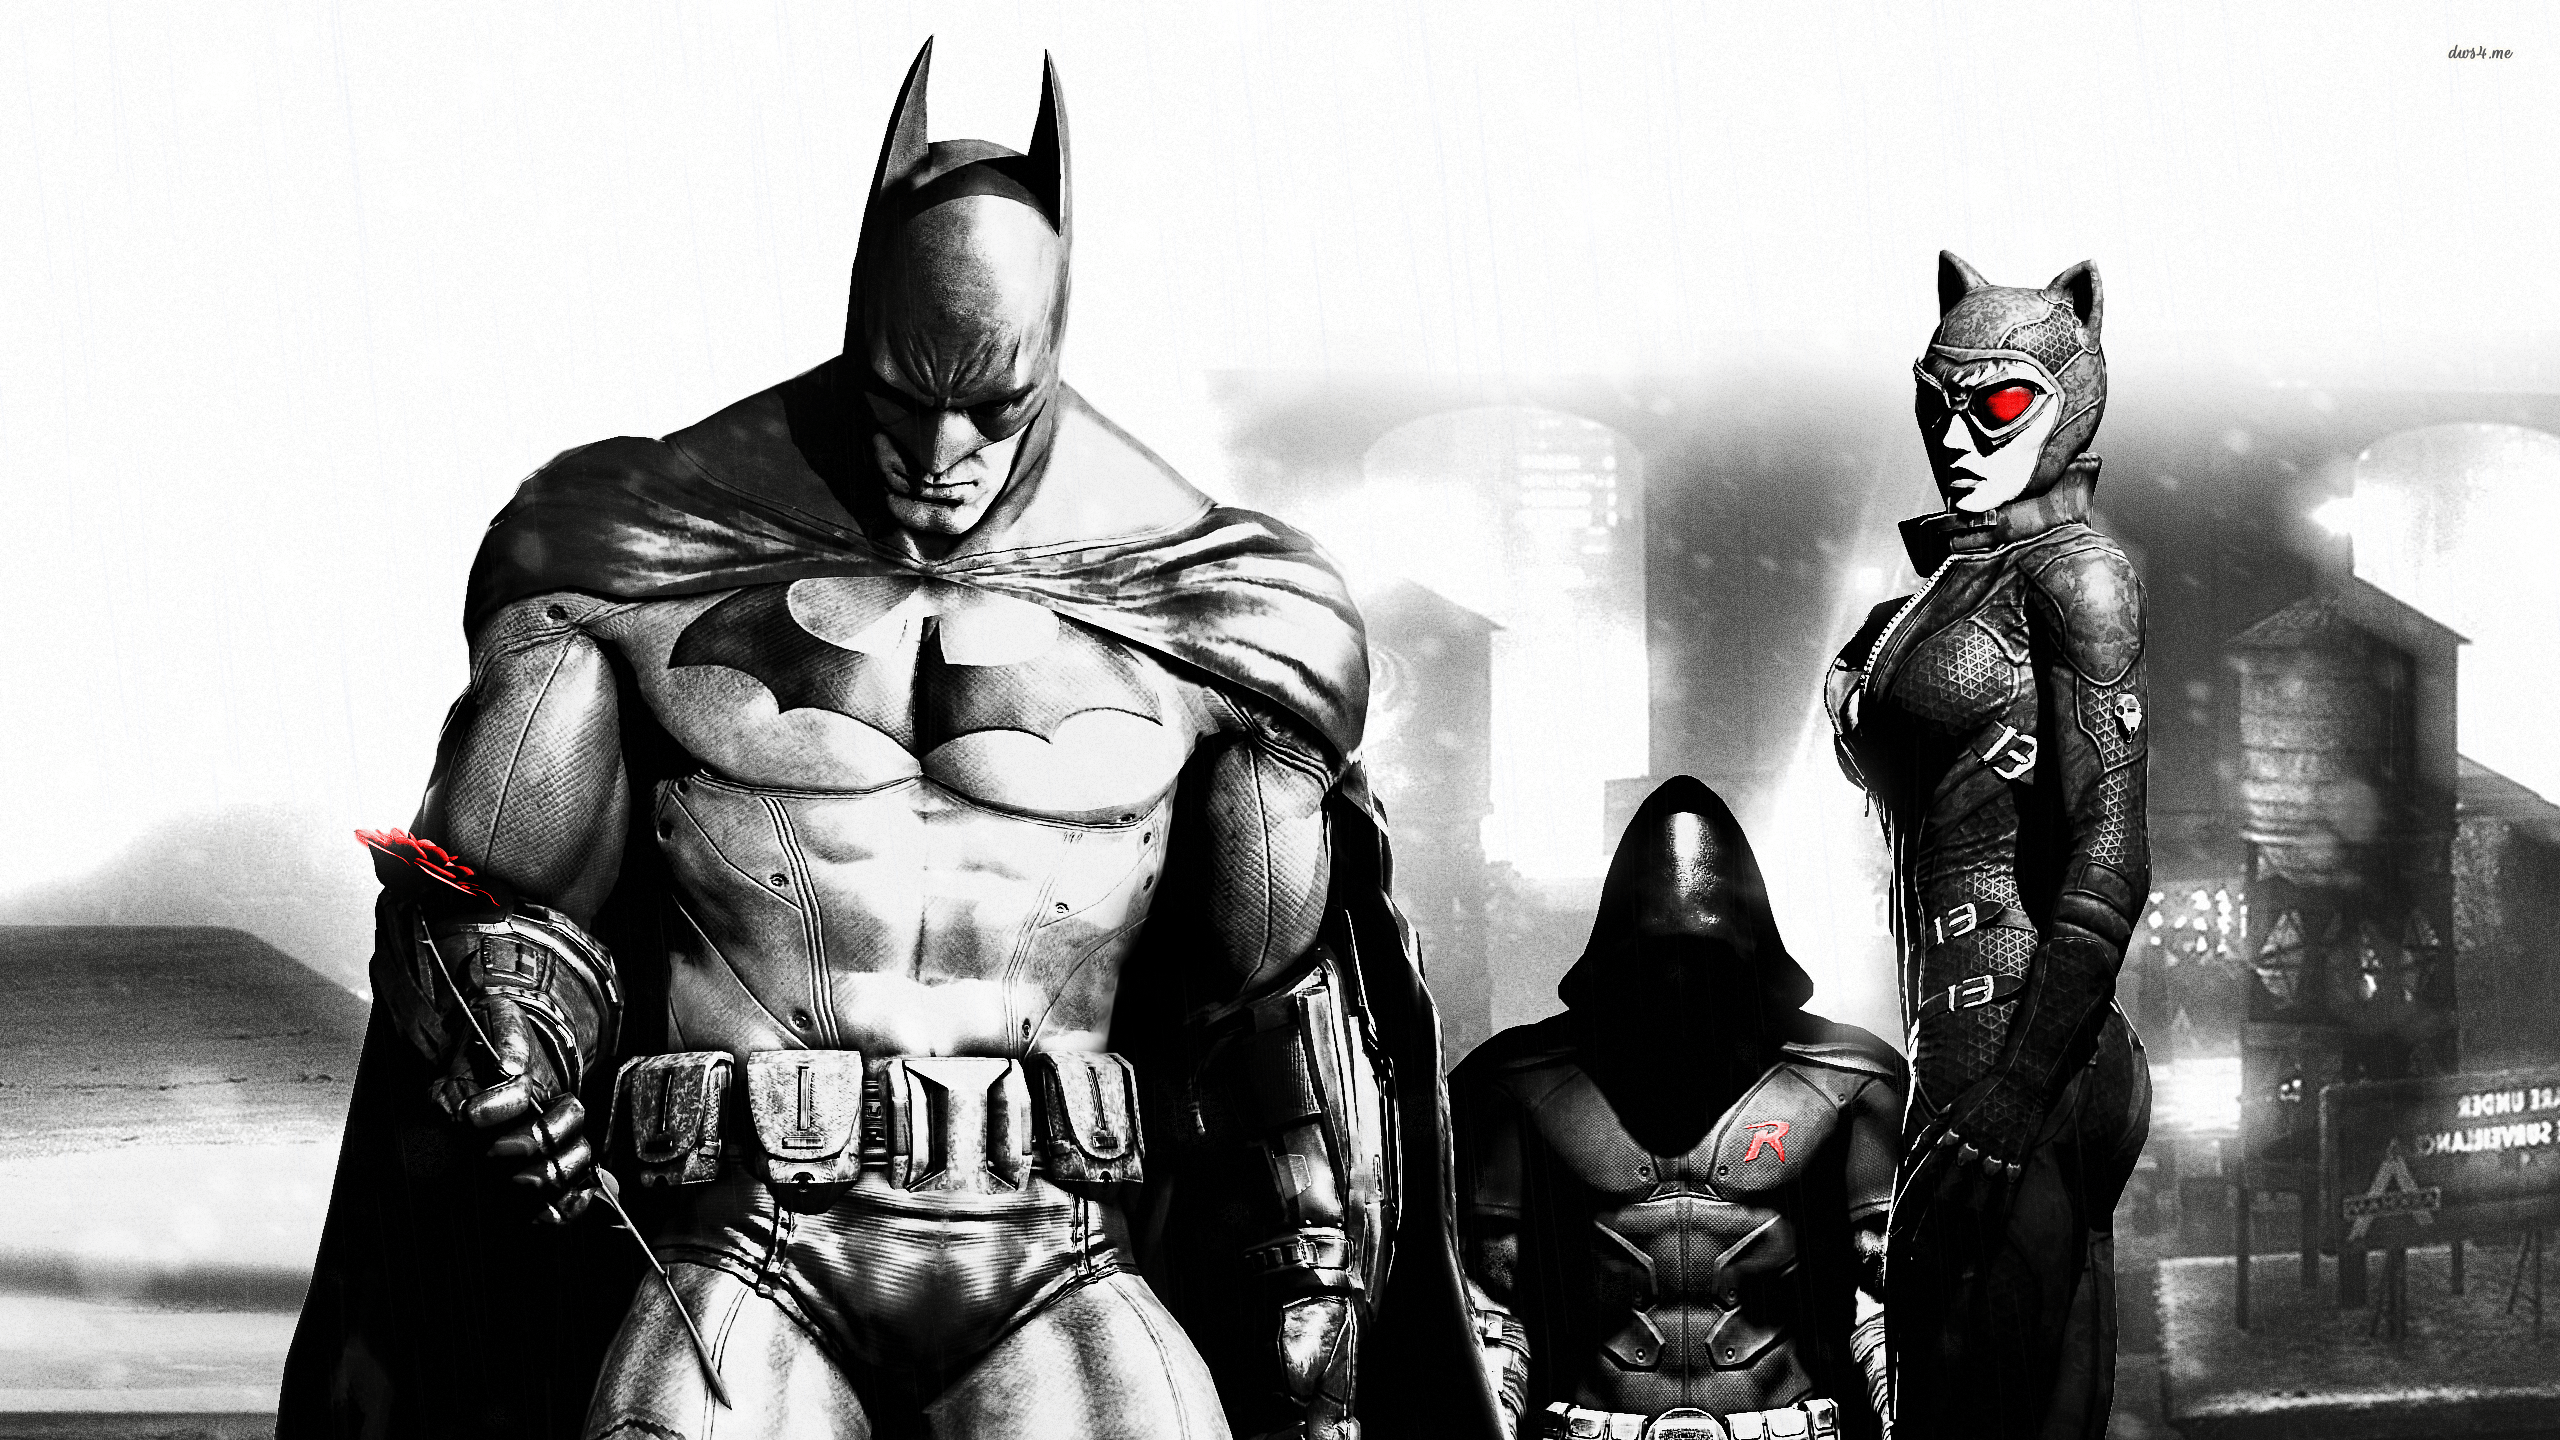 batman arkham city wallpaper hd 1080p